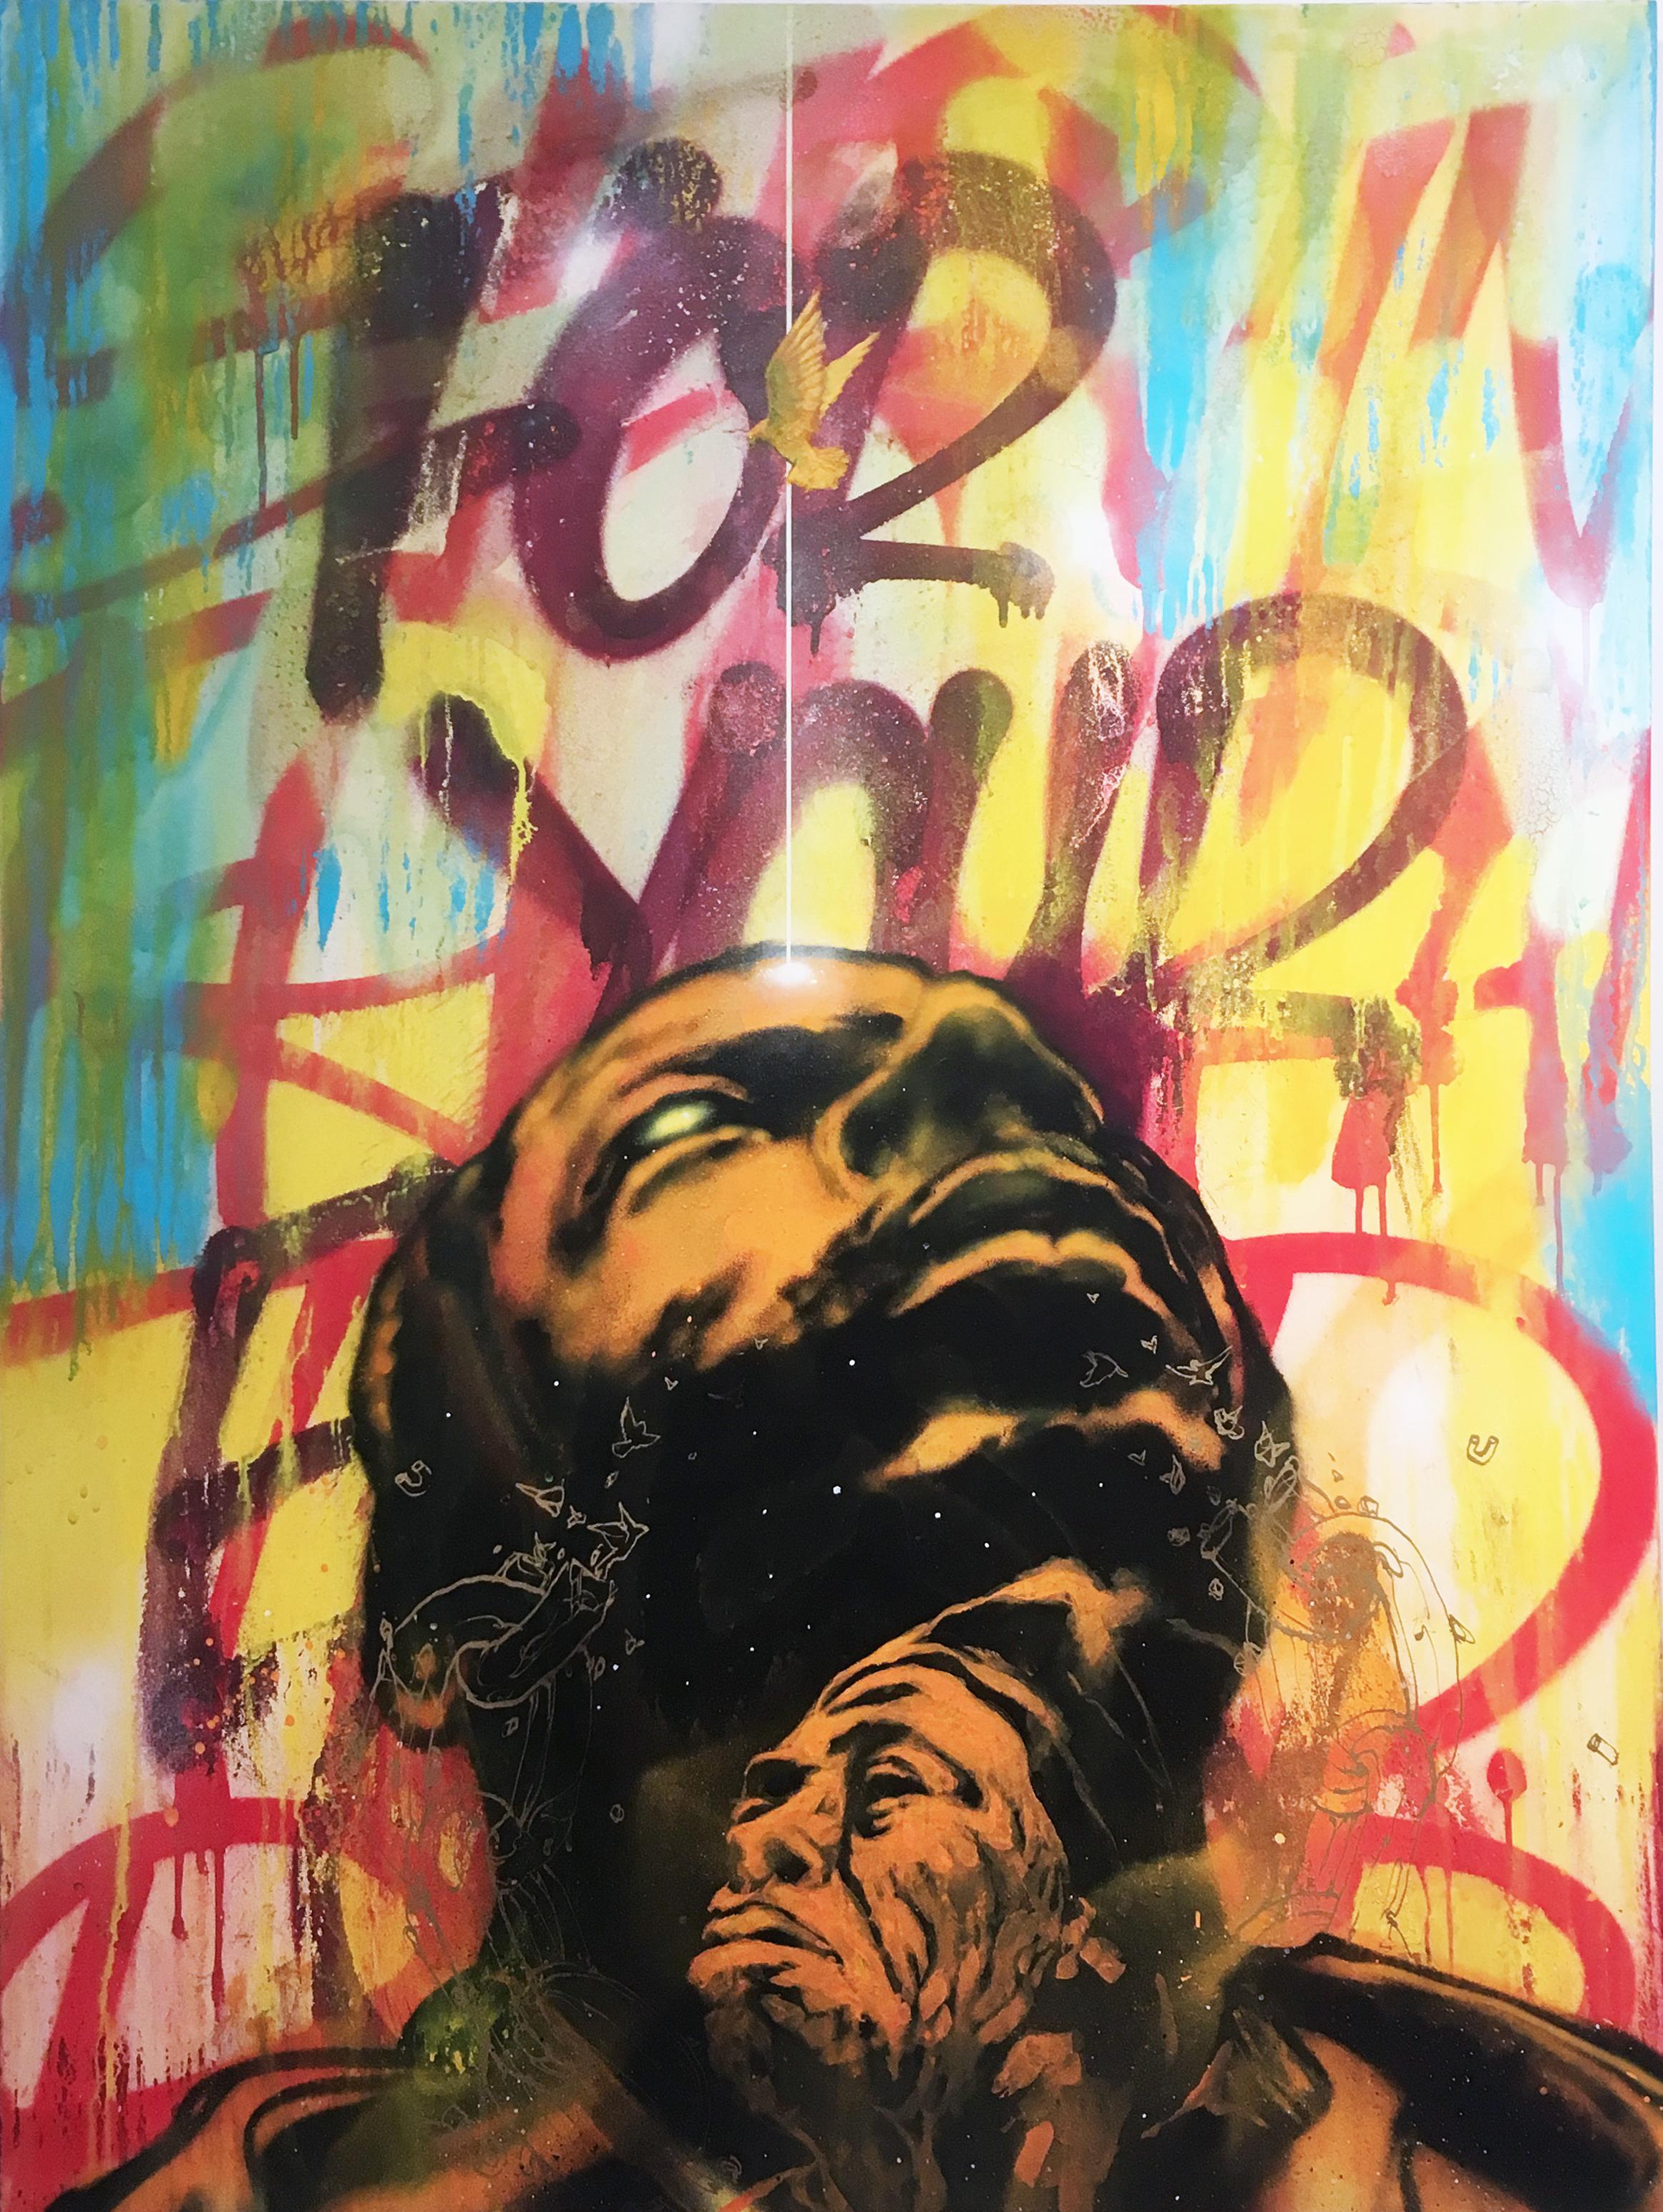 Break Free de l'artiste de rue MUSTART, portrait et texte, peinture à la bombe, audacieuse et brillante